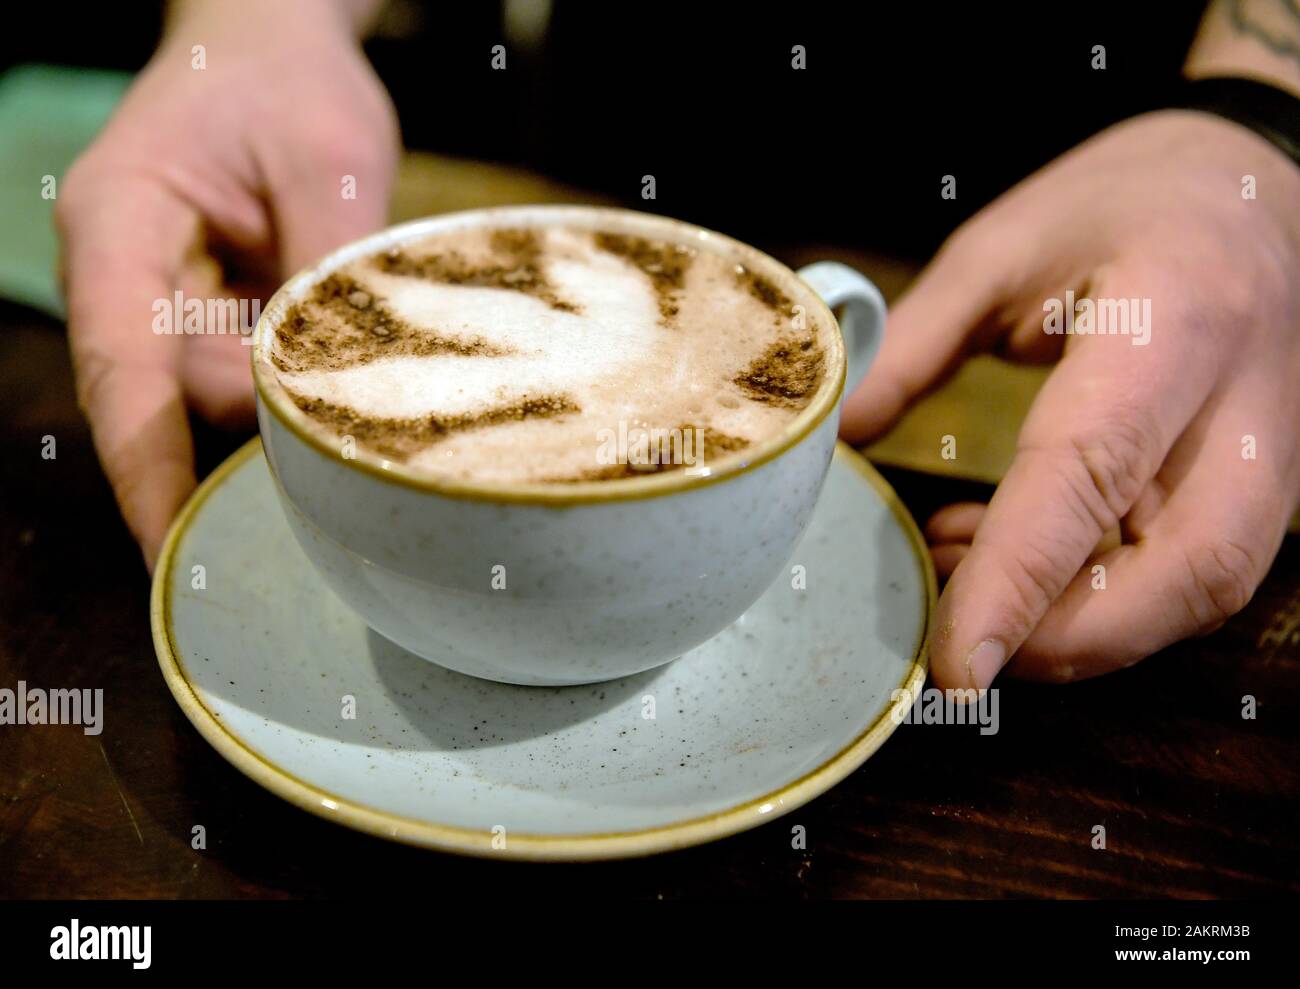 Il 07 gennaio 2020, Berlin: Nico Schack serve "Canna" in un cappuccino al CBD Café. Foto: Britta Pedersen/dpa-Zentralbild/ZB Foto Stock